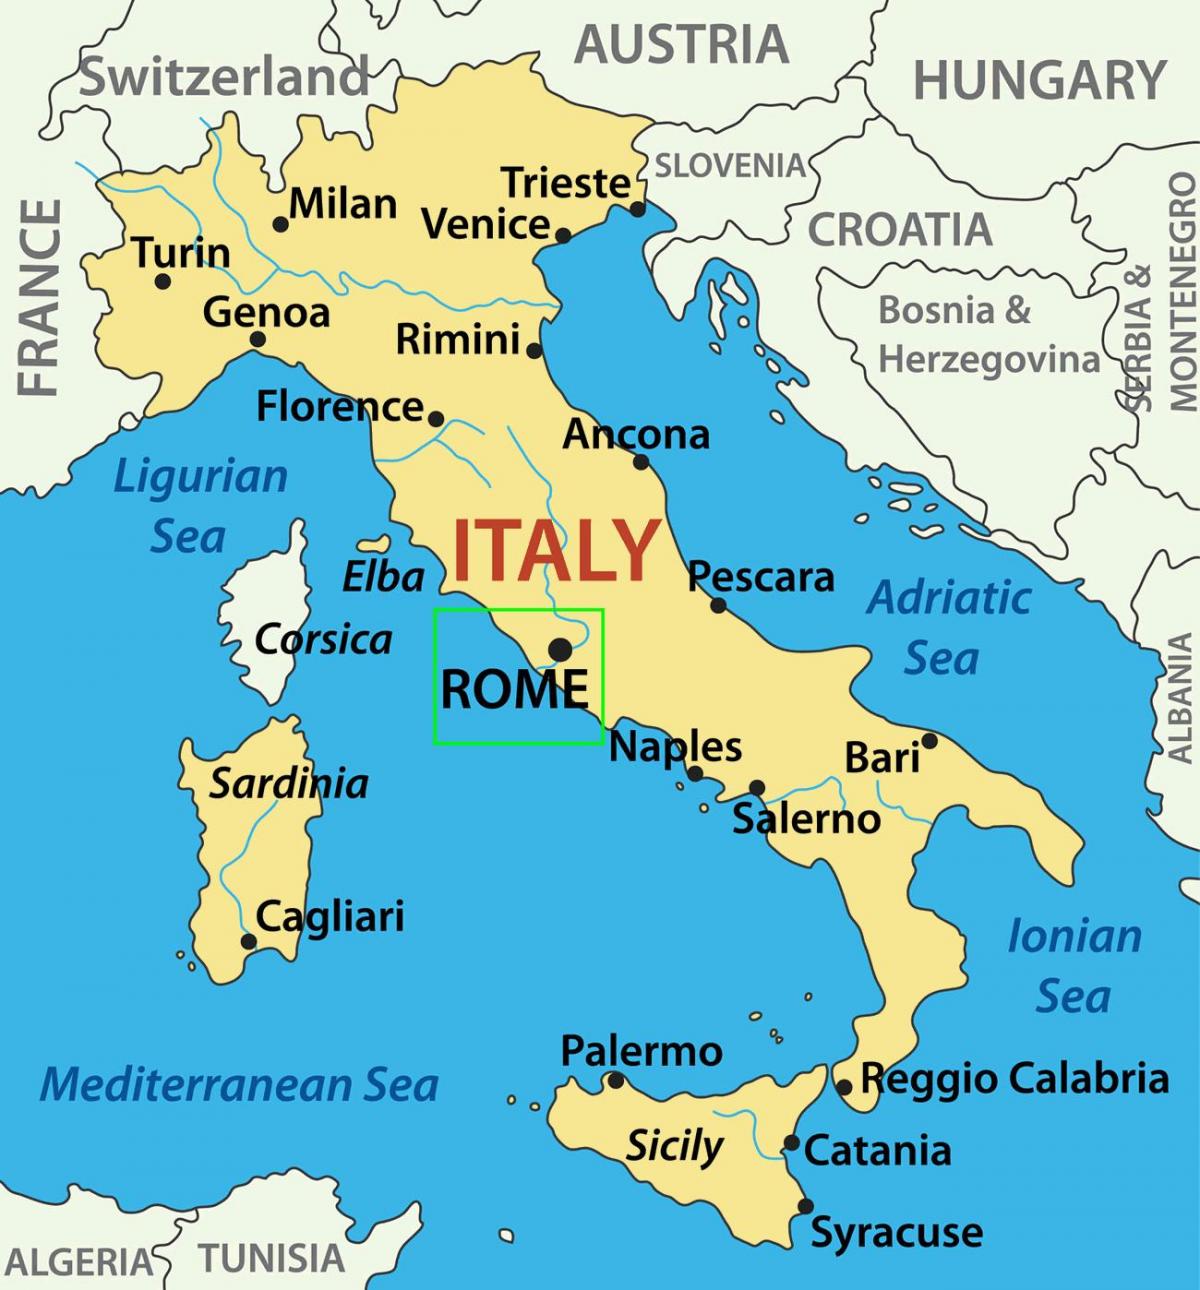 mapa da Itália mostrando Roma